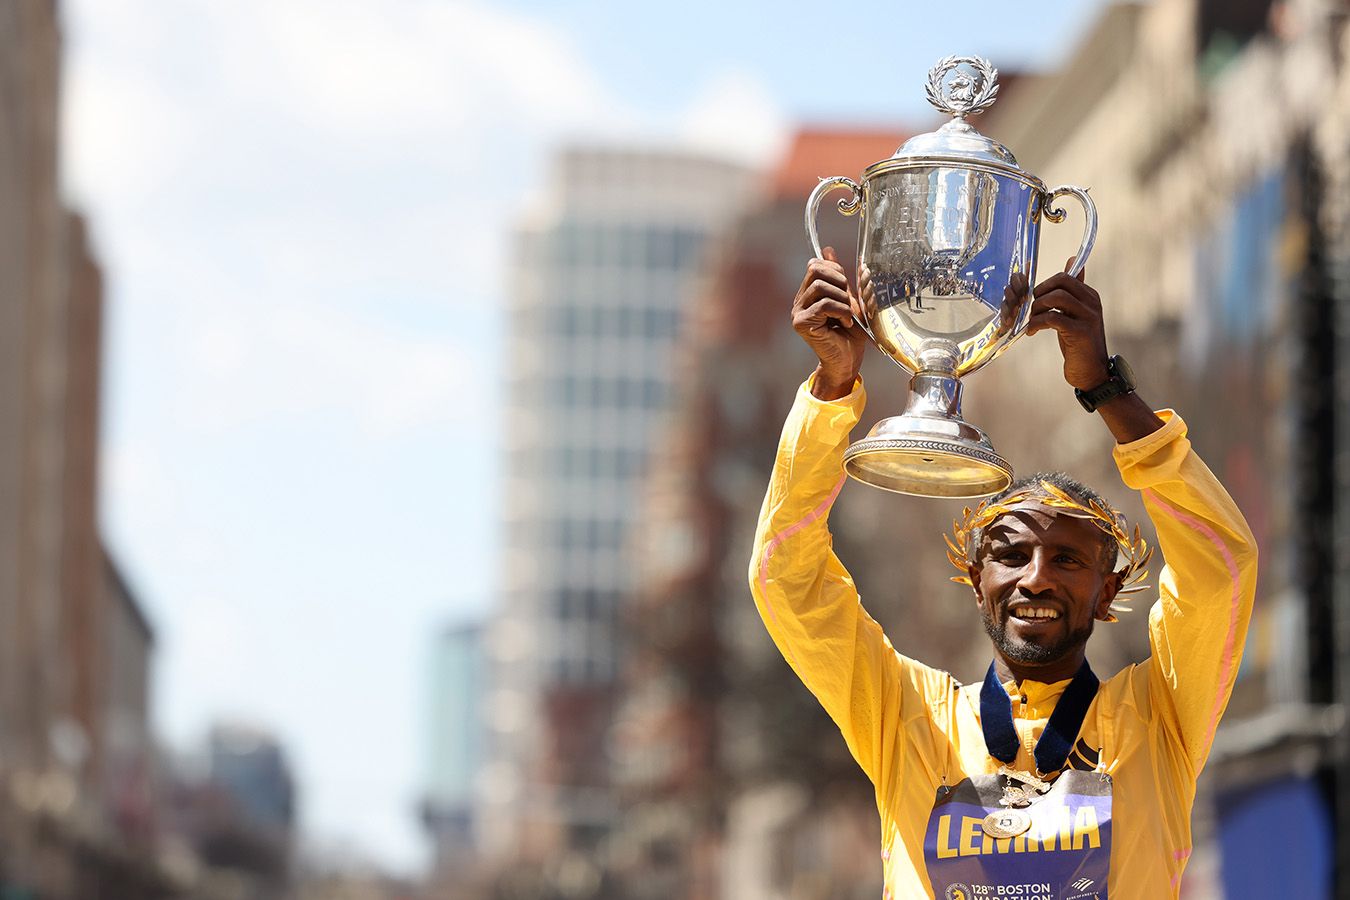 Сисай Лемма из Эфиопии выиграл Бостонский марафон, двукратный победитель Чебет стал 3-м